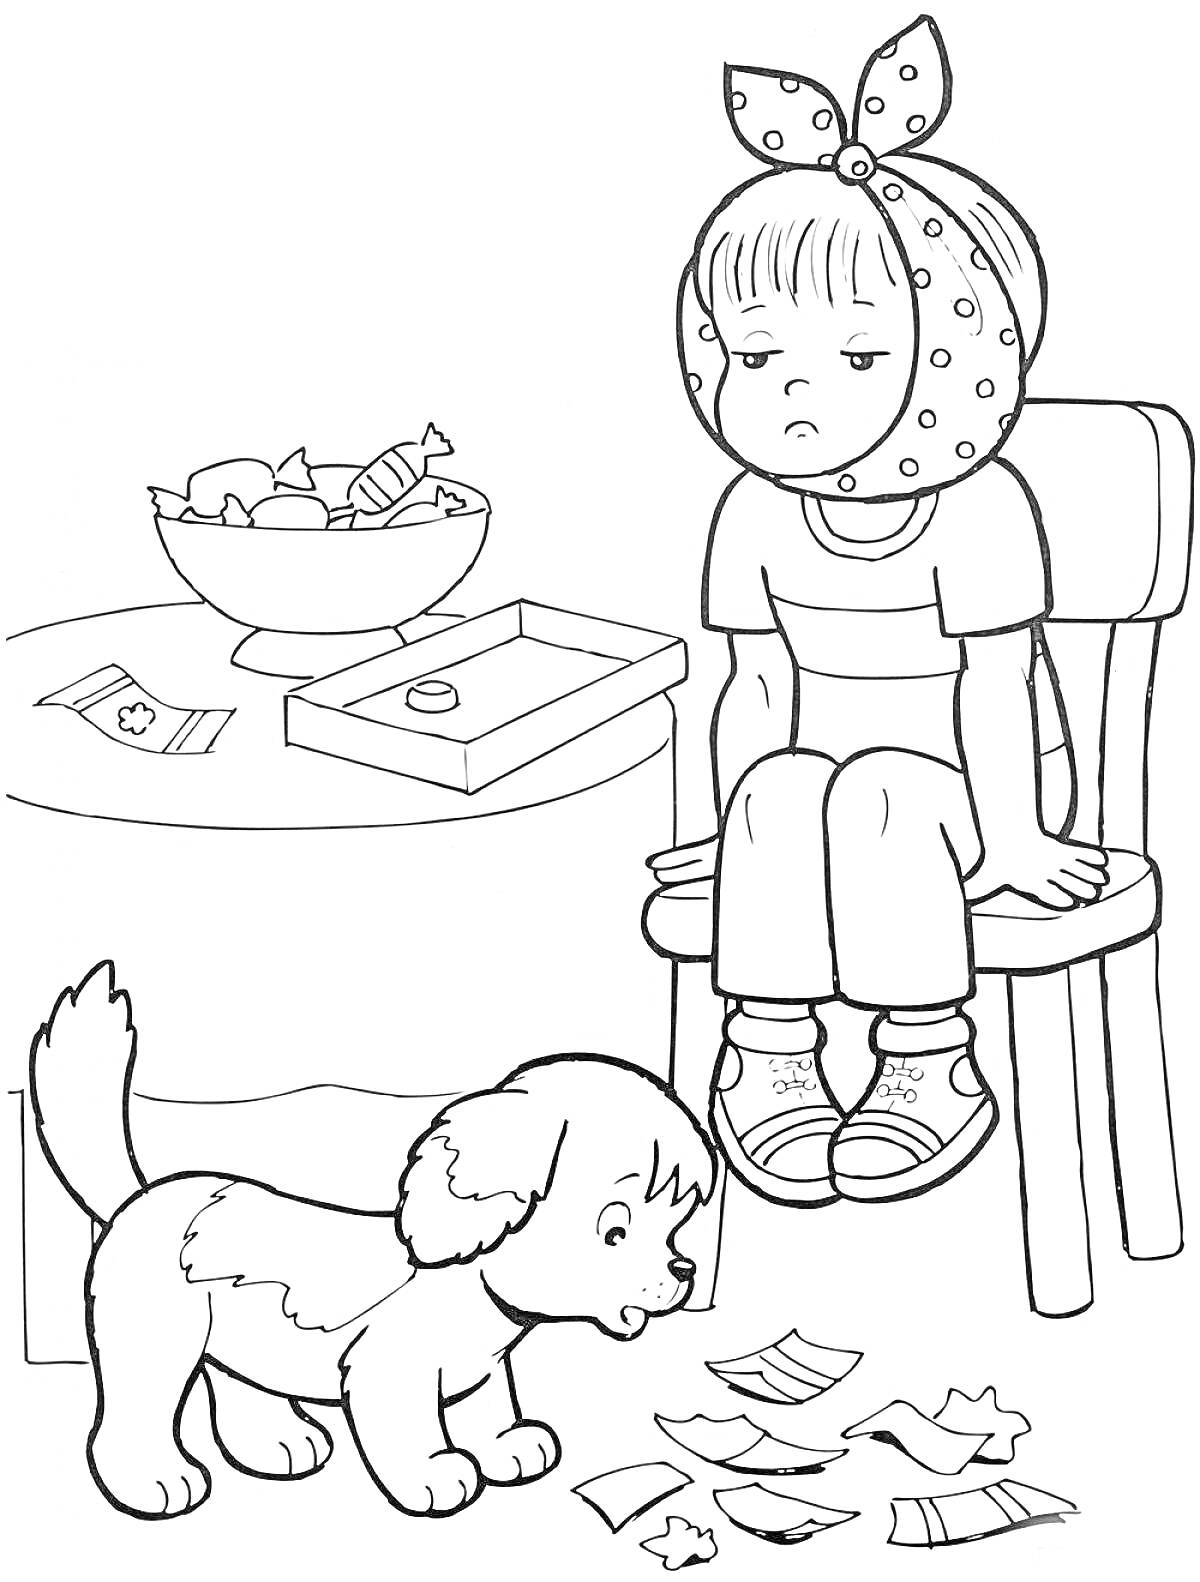 Девочка на стуле с повязкой на голове, стол с лекарствами и конфетами, щенок на полу